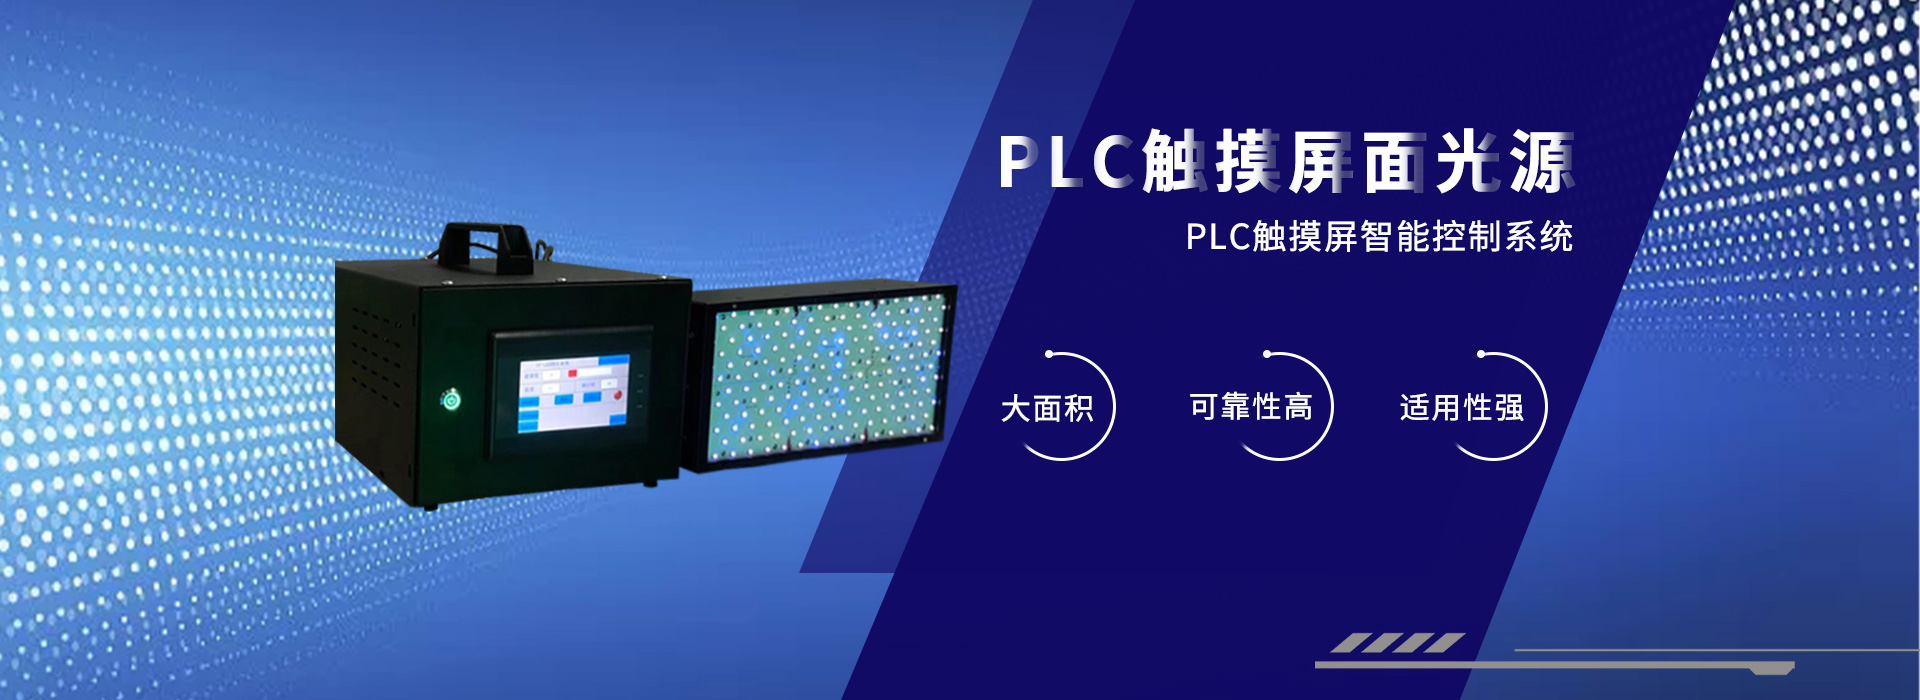 深圳UV固化灯,UVled固化设备厂家